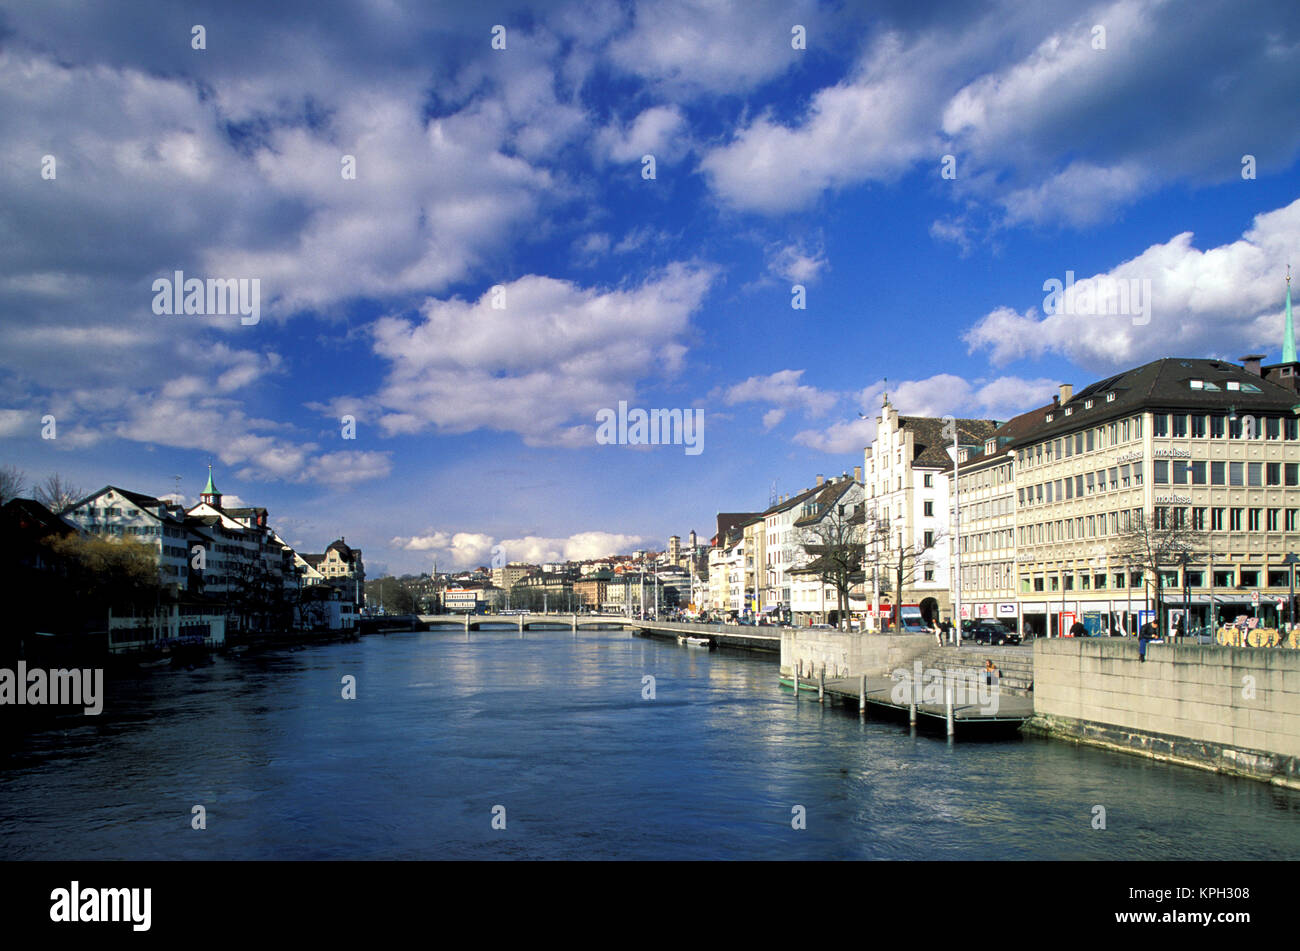 Switzerland, Zurich. View of Limmat River from Weinplatz Stock Photo